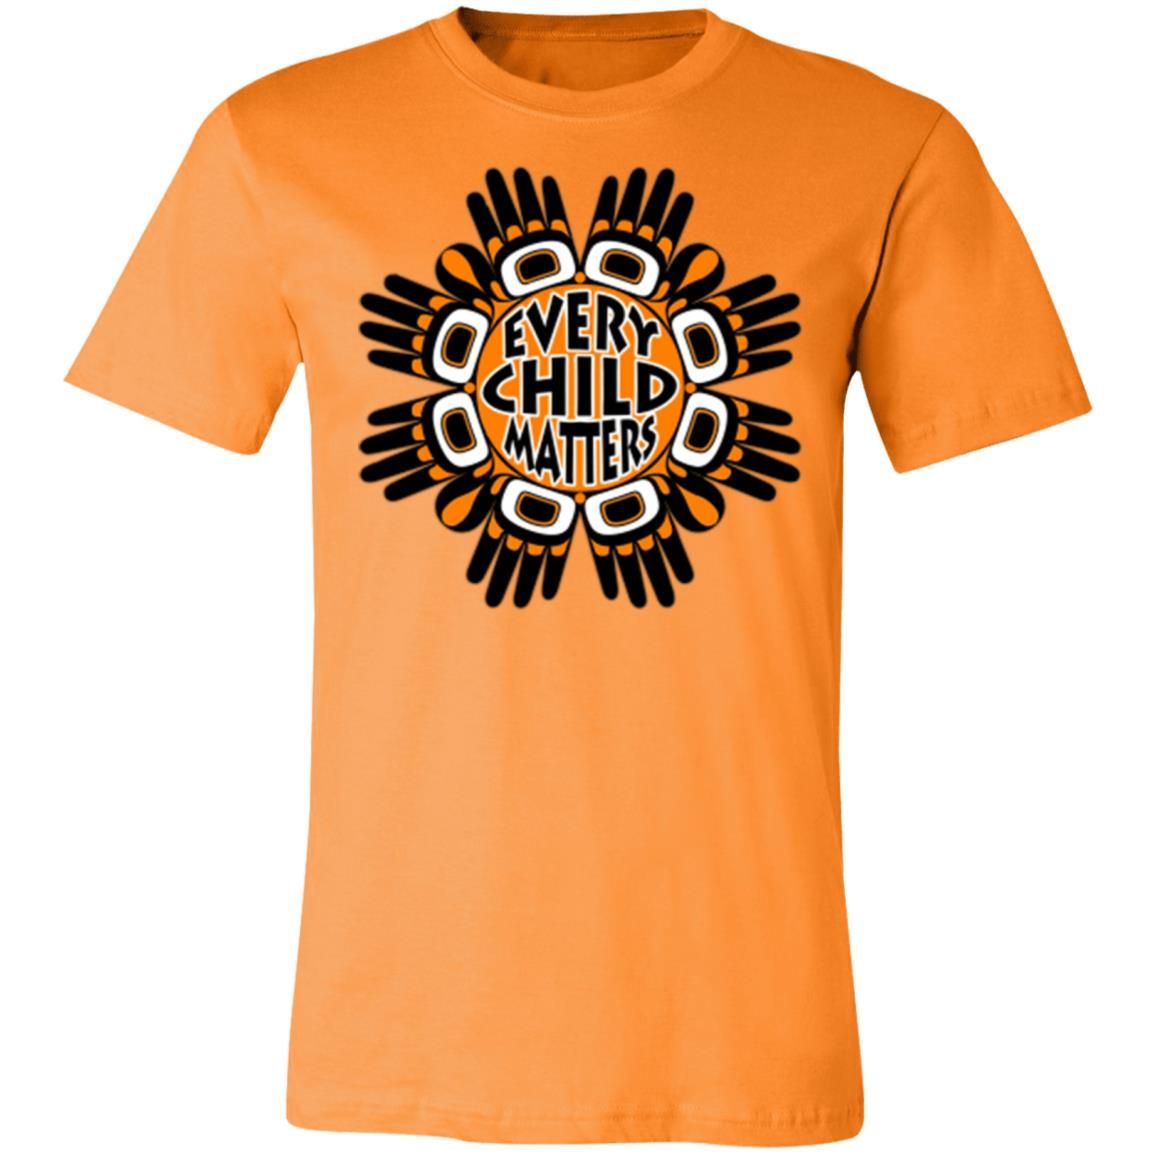 Every Child Matters Orange Shirt Day Style: 3001C Unisex Jersey Short-Sleeve T-Shirt, Color: Orange